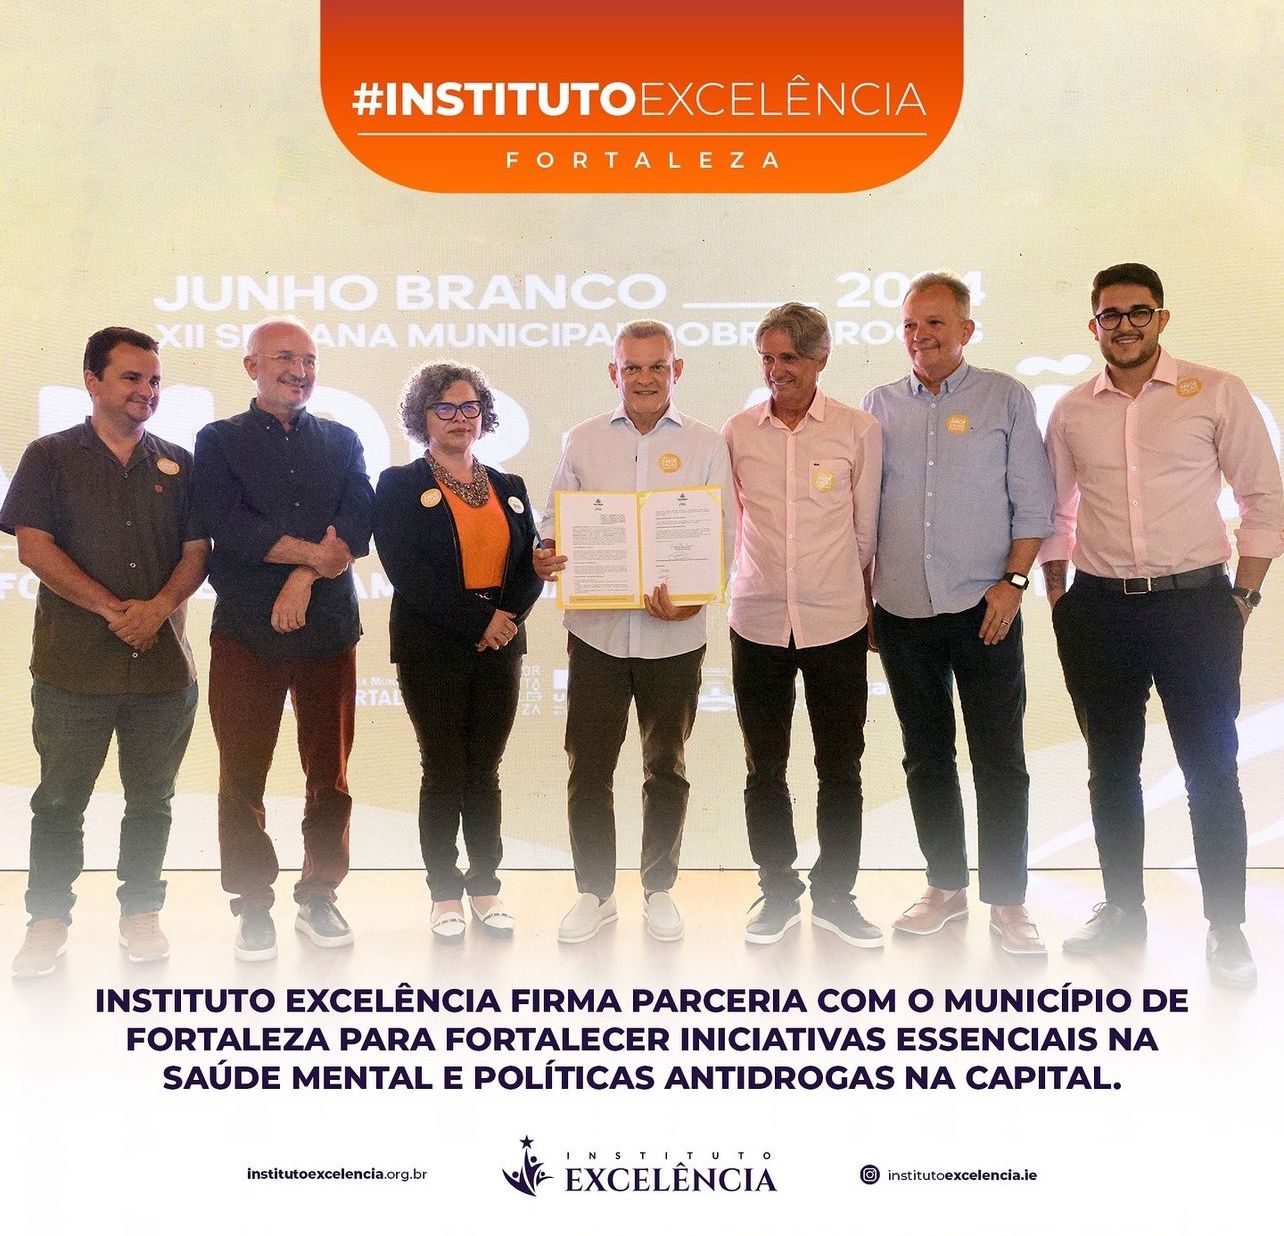 Instituto Excelência firma parceria com o município de Fortaleza  para fortalecer iniciativas essenciais na saúde mental e políticas antidrogas na Capital.